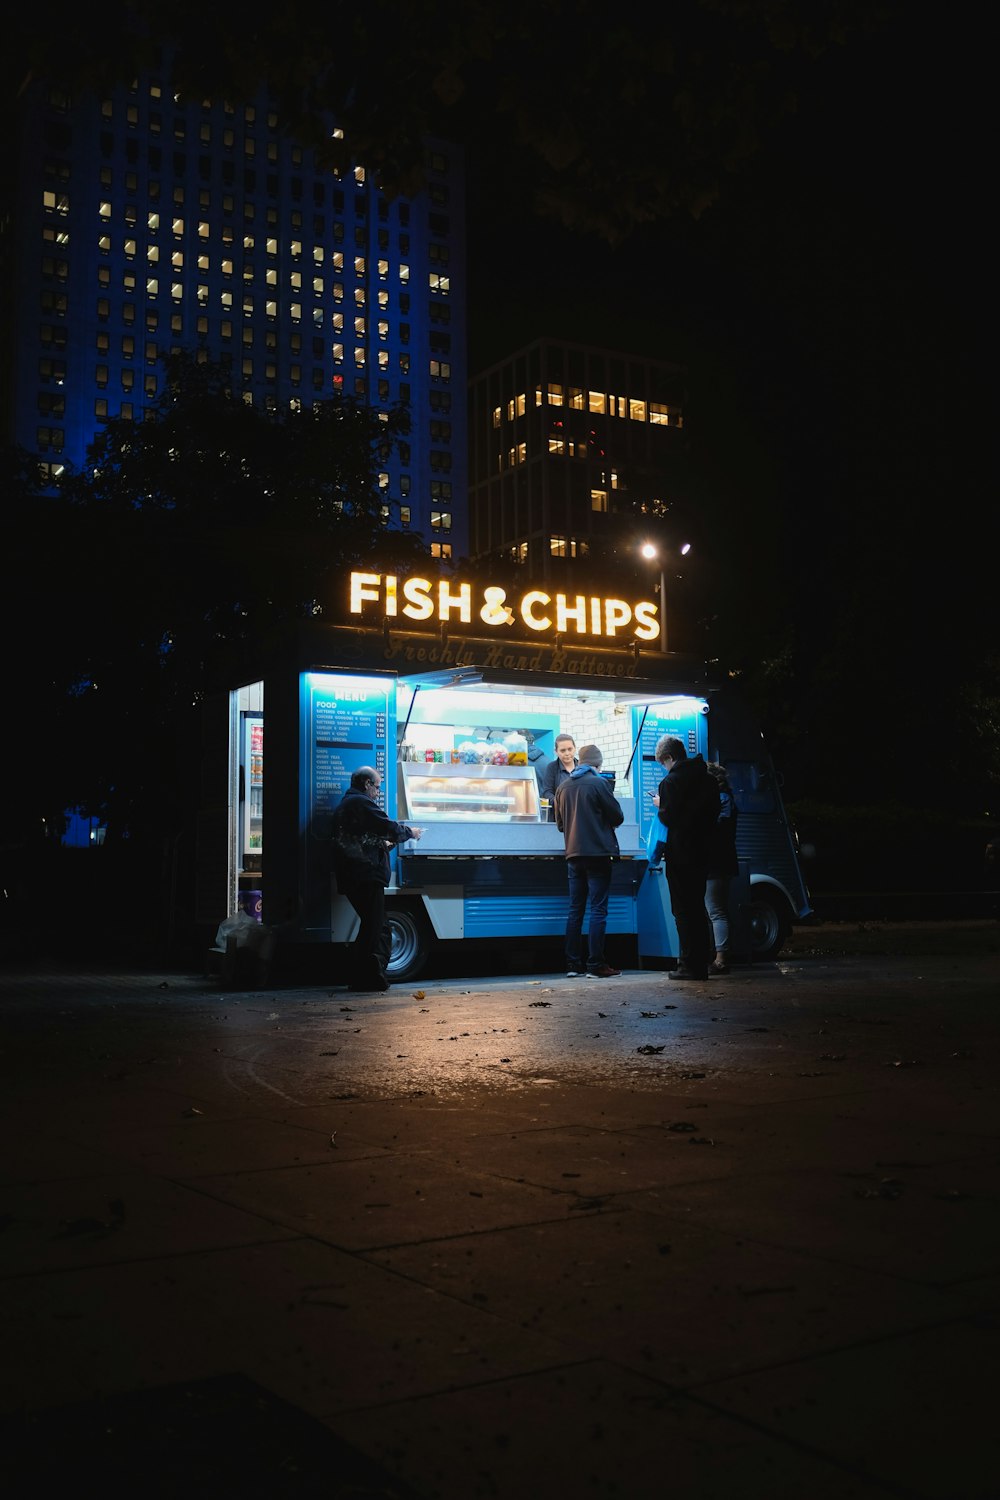 gruppo di persone in piedi sul negozio Fish & Chips